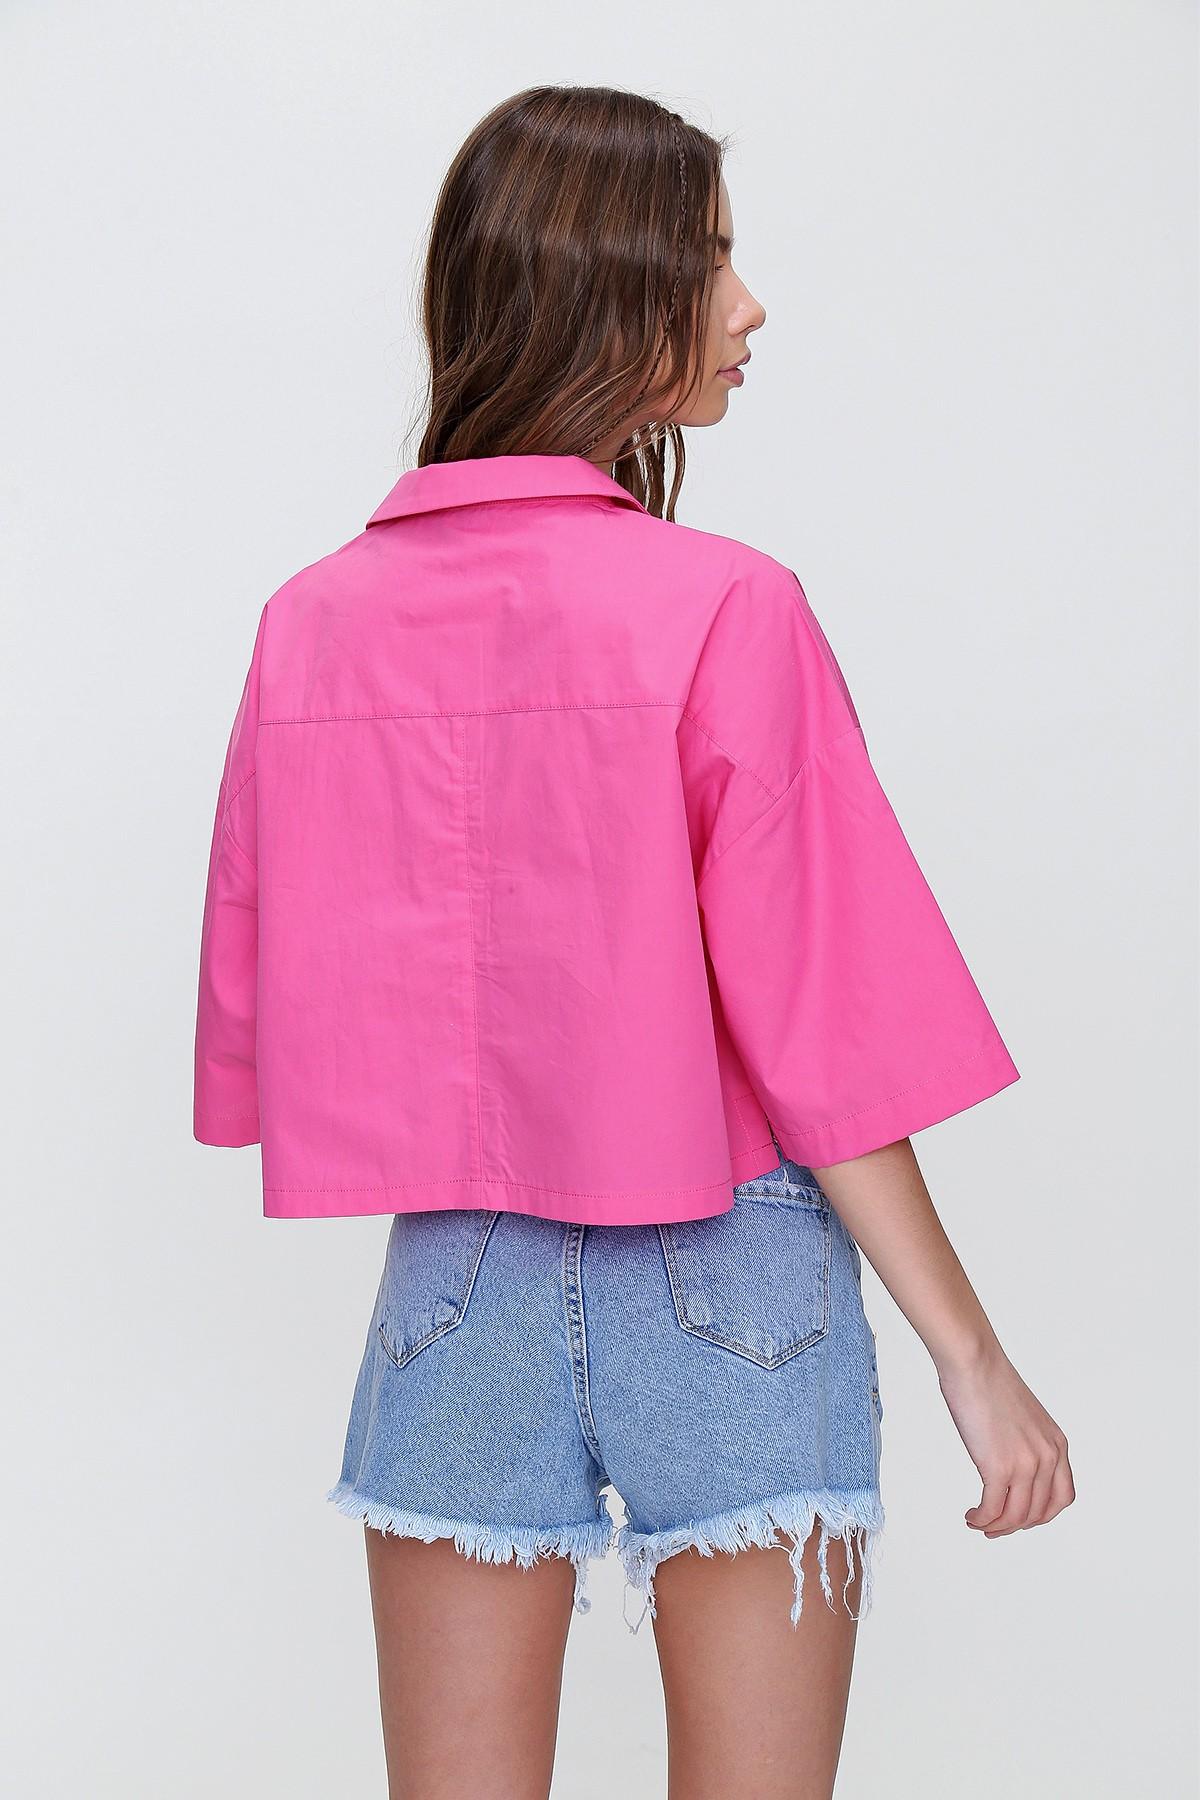 Selected image for DEFILE PARIS Ženska košulja ALC-X6045 roze